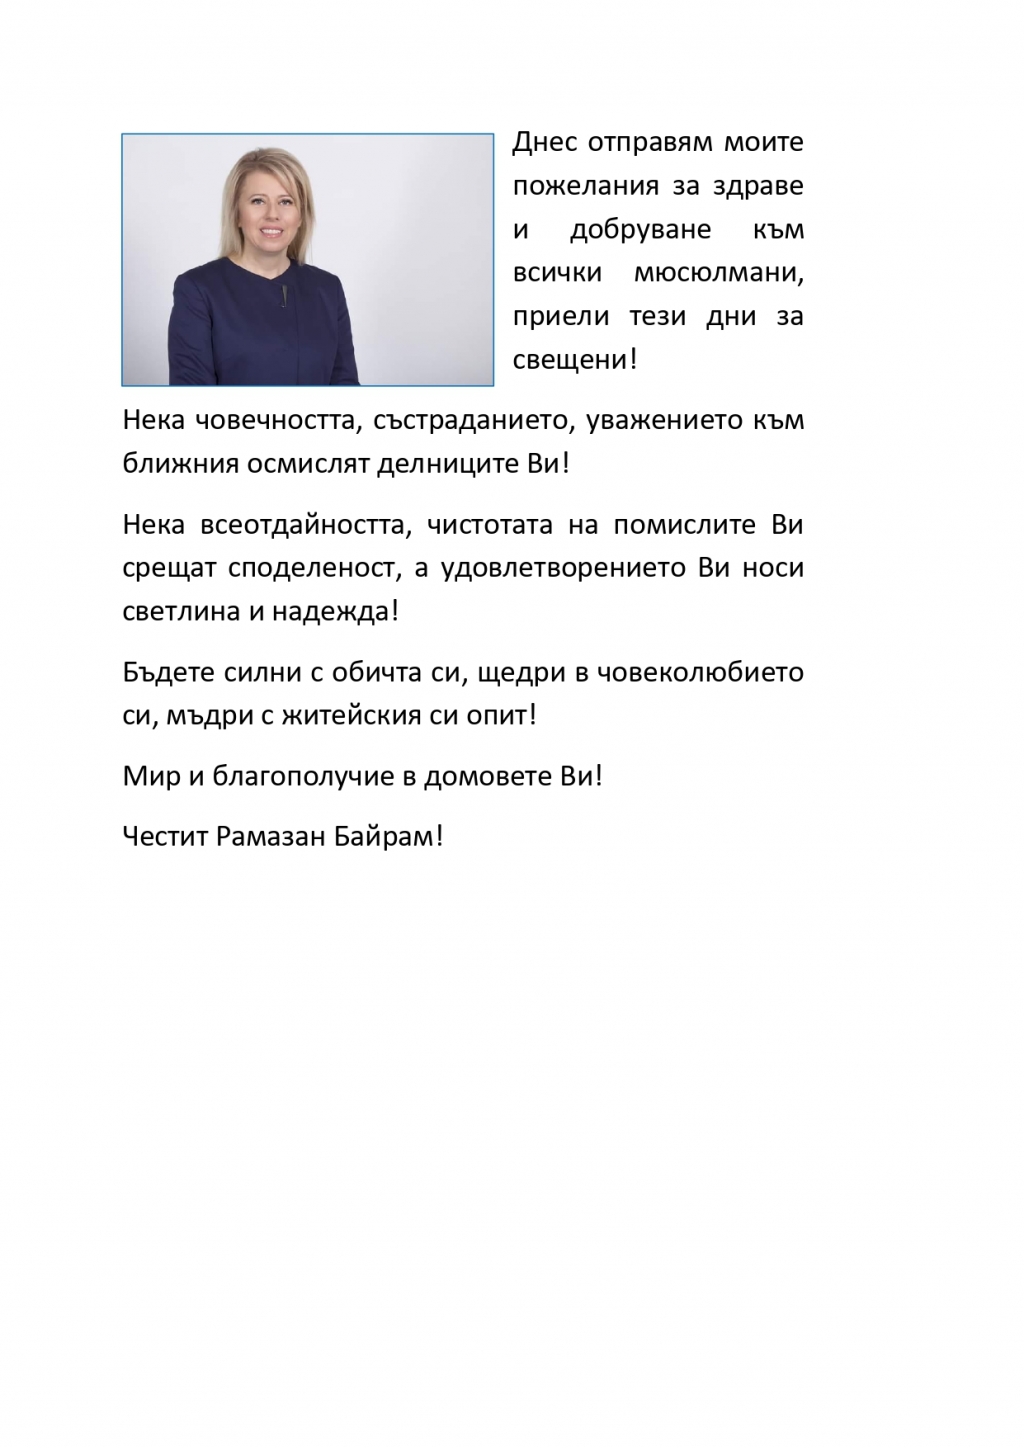 Кметът Соня Георгиева: Бъдете силни с обичта си, щедри в човеколюбието си, мъдри с житейския си опит!